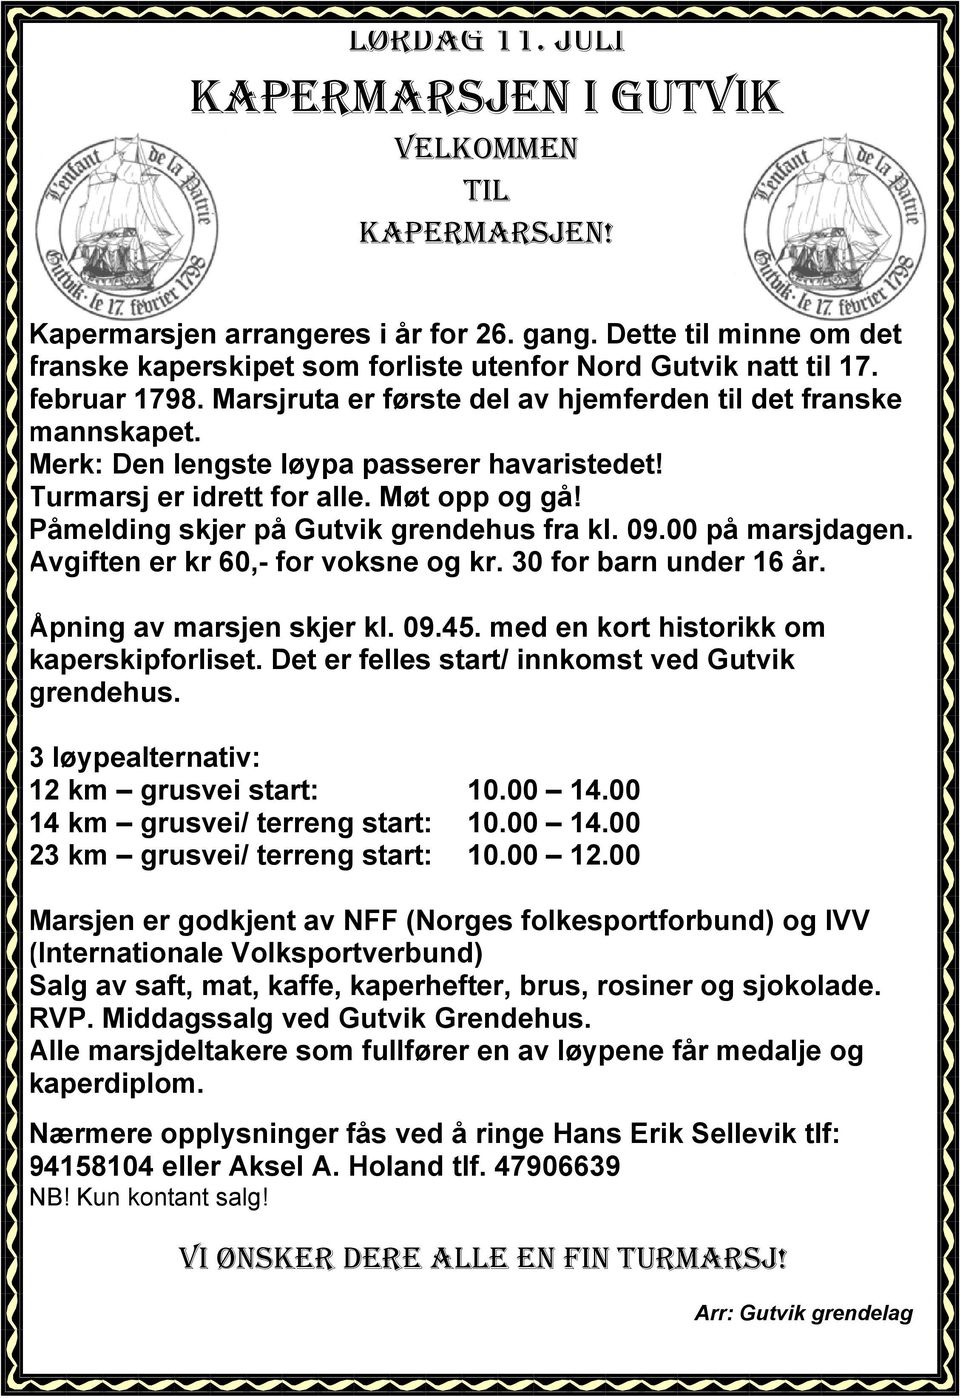 Påmelding skjer på Gutvik grendehus fra kl. 09.00 på marsjdagen. Avgiften er kr 60,- for voksne og kr. 30 for barn under 16 år. Åpning av marsjen skjer kl. 09.45.